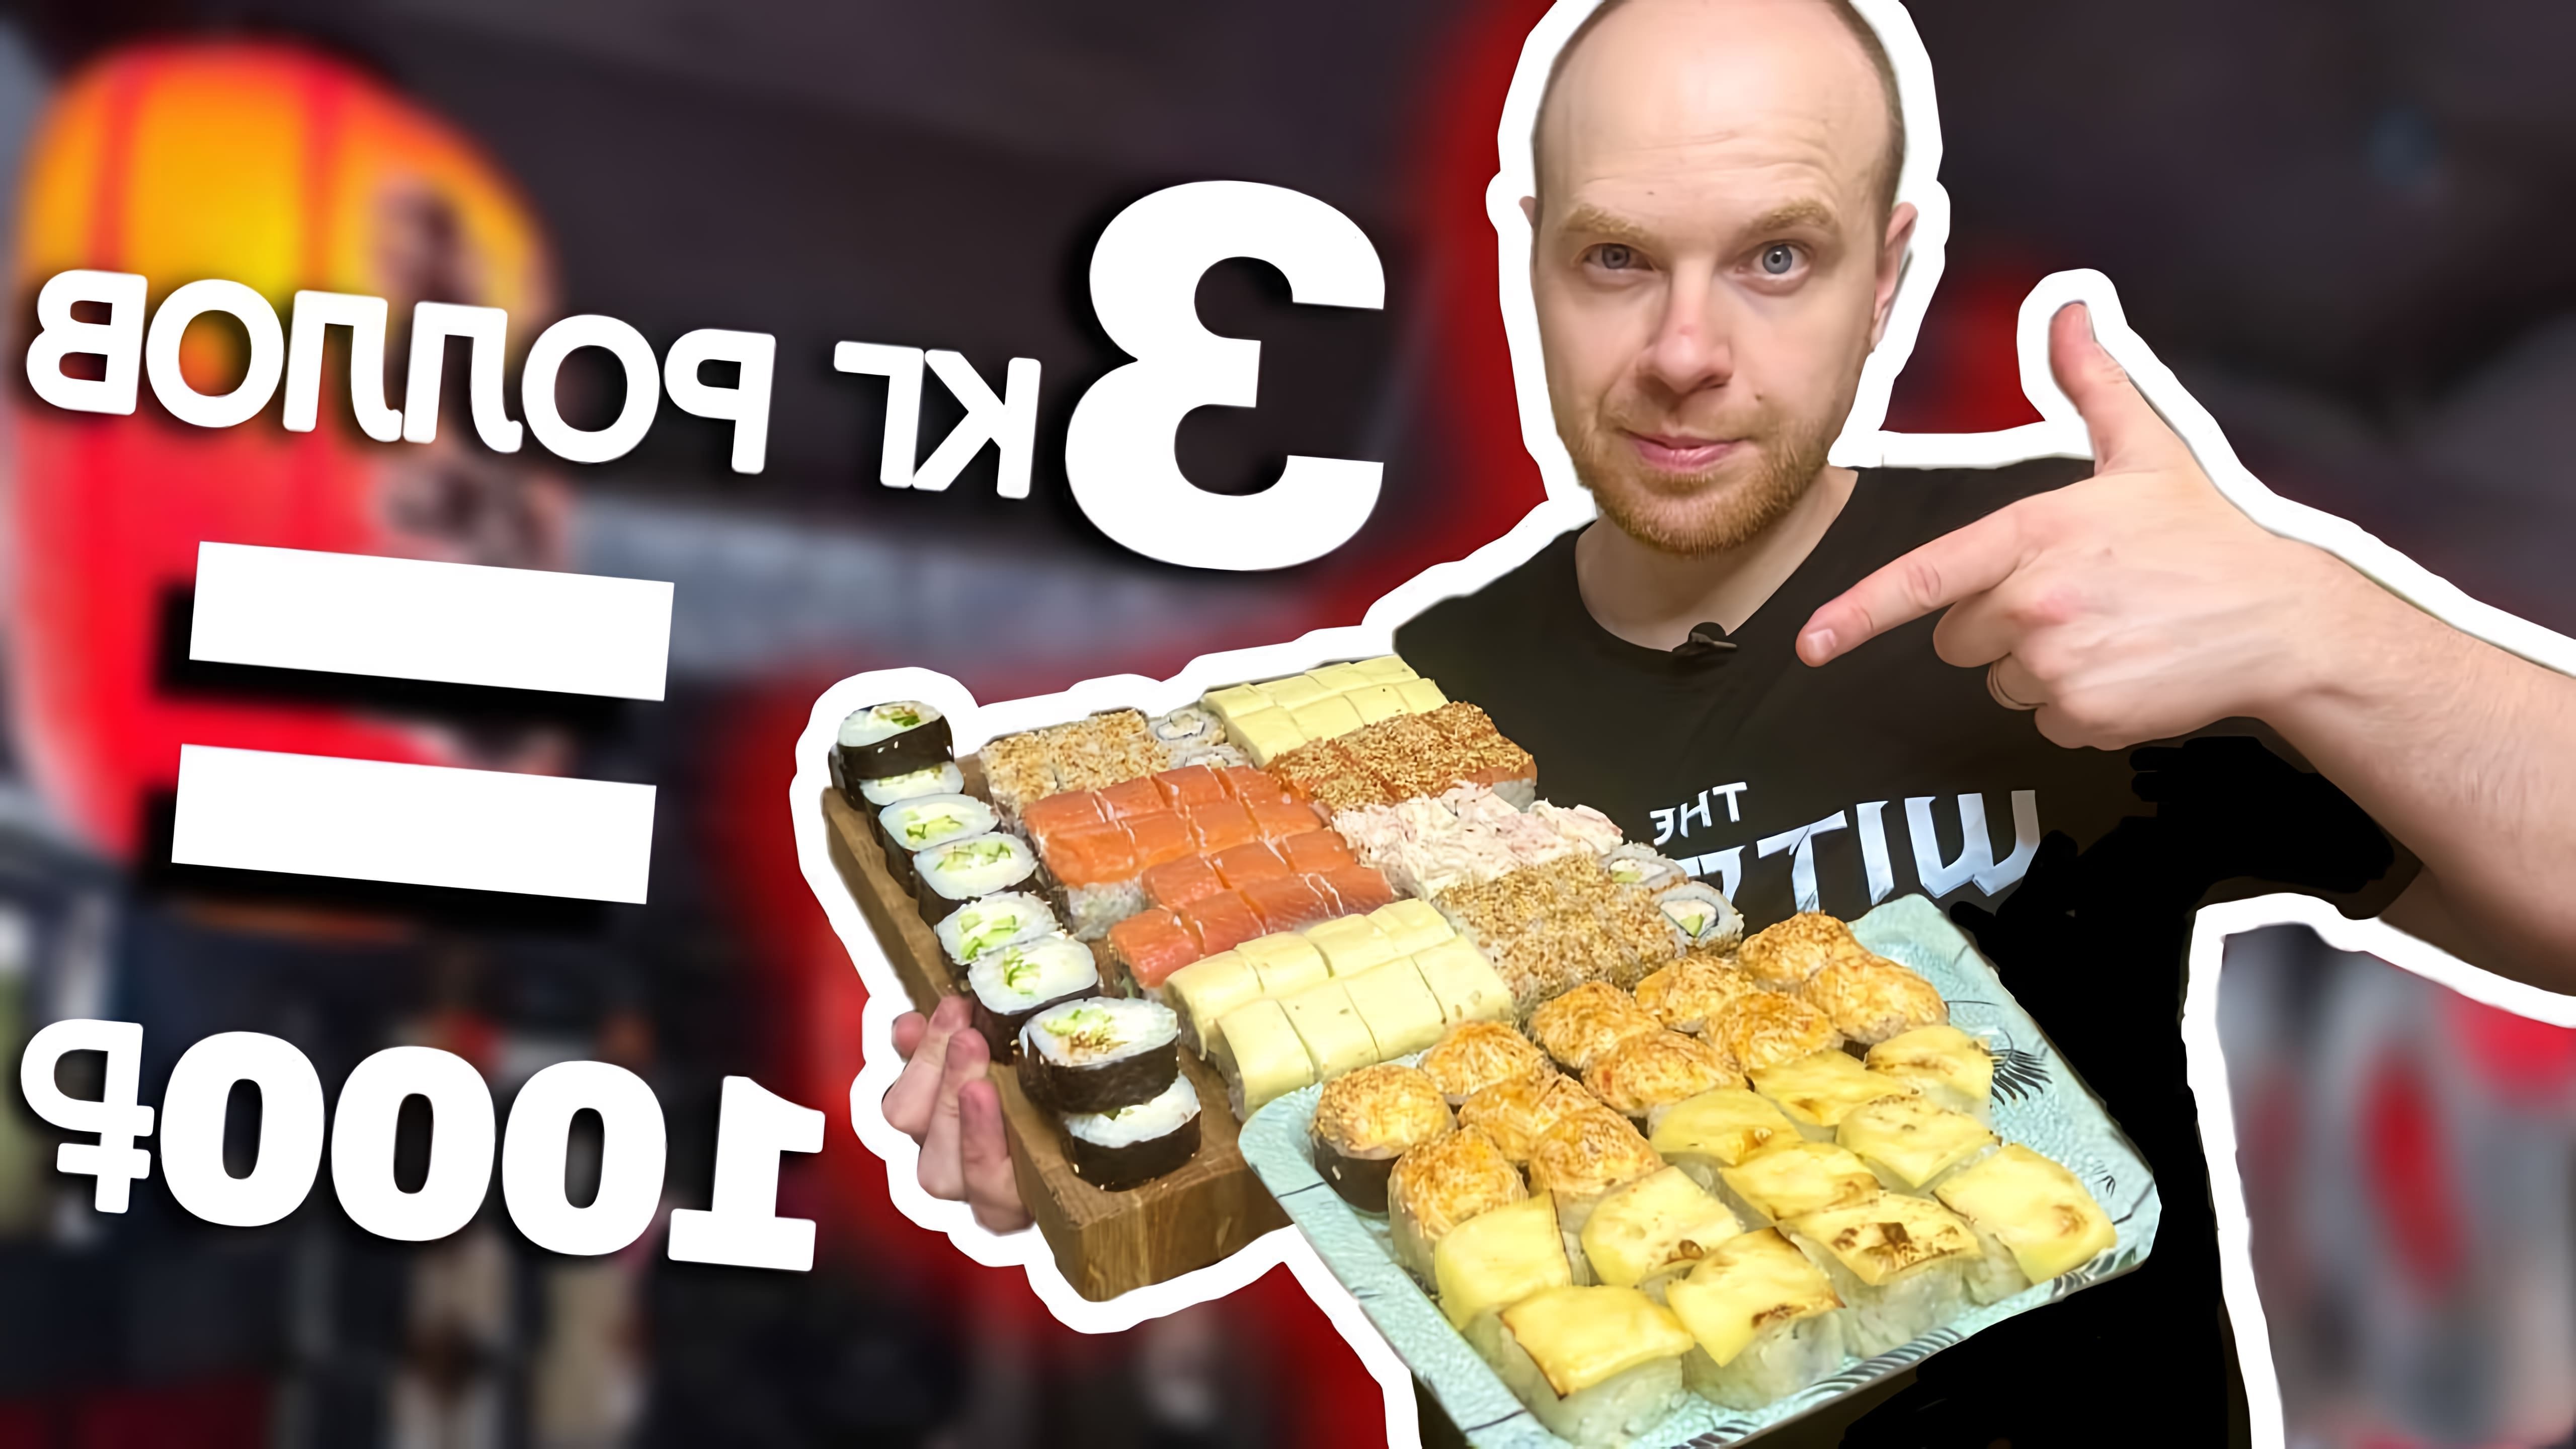 Видео как приготовить роллы суши и подготовить ингредиенты для суши за 1000 рублей (около 15 долларов США)